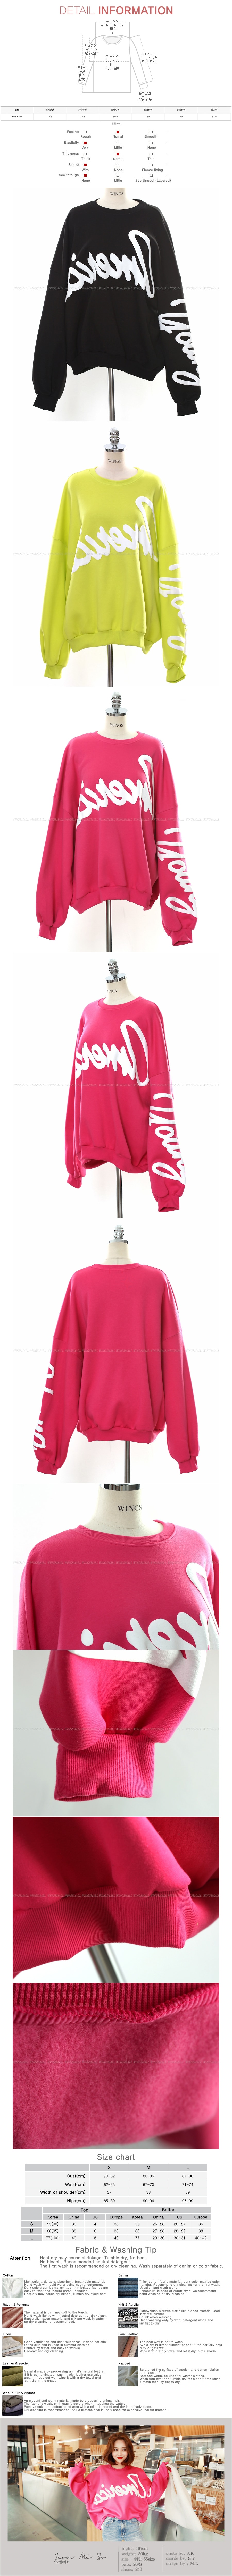 WINGS Embossed Letter Print Sweatshirt #Deep Pink One Size(Free)